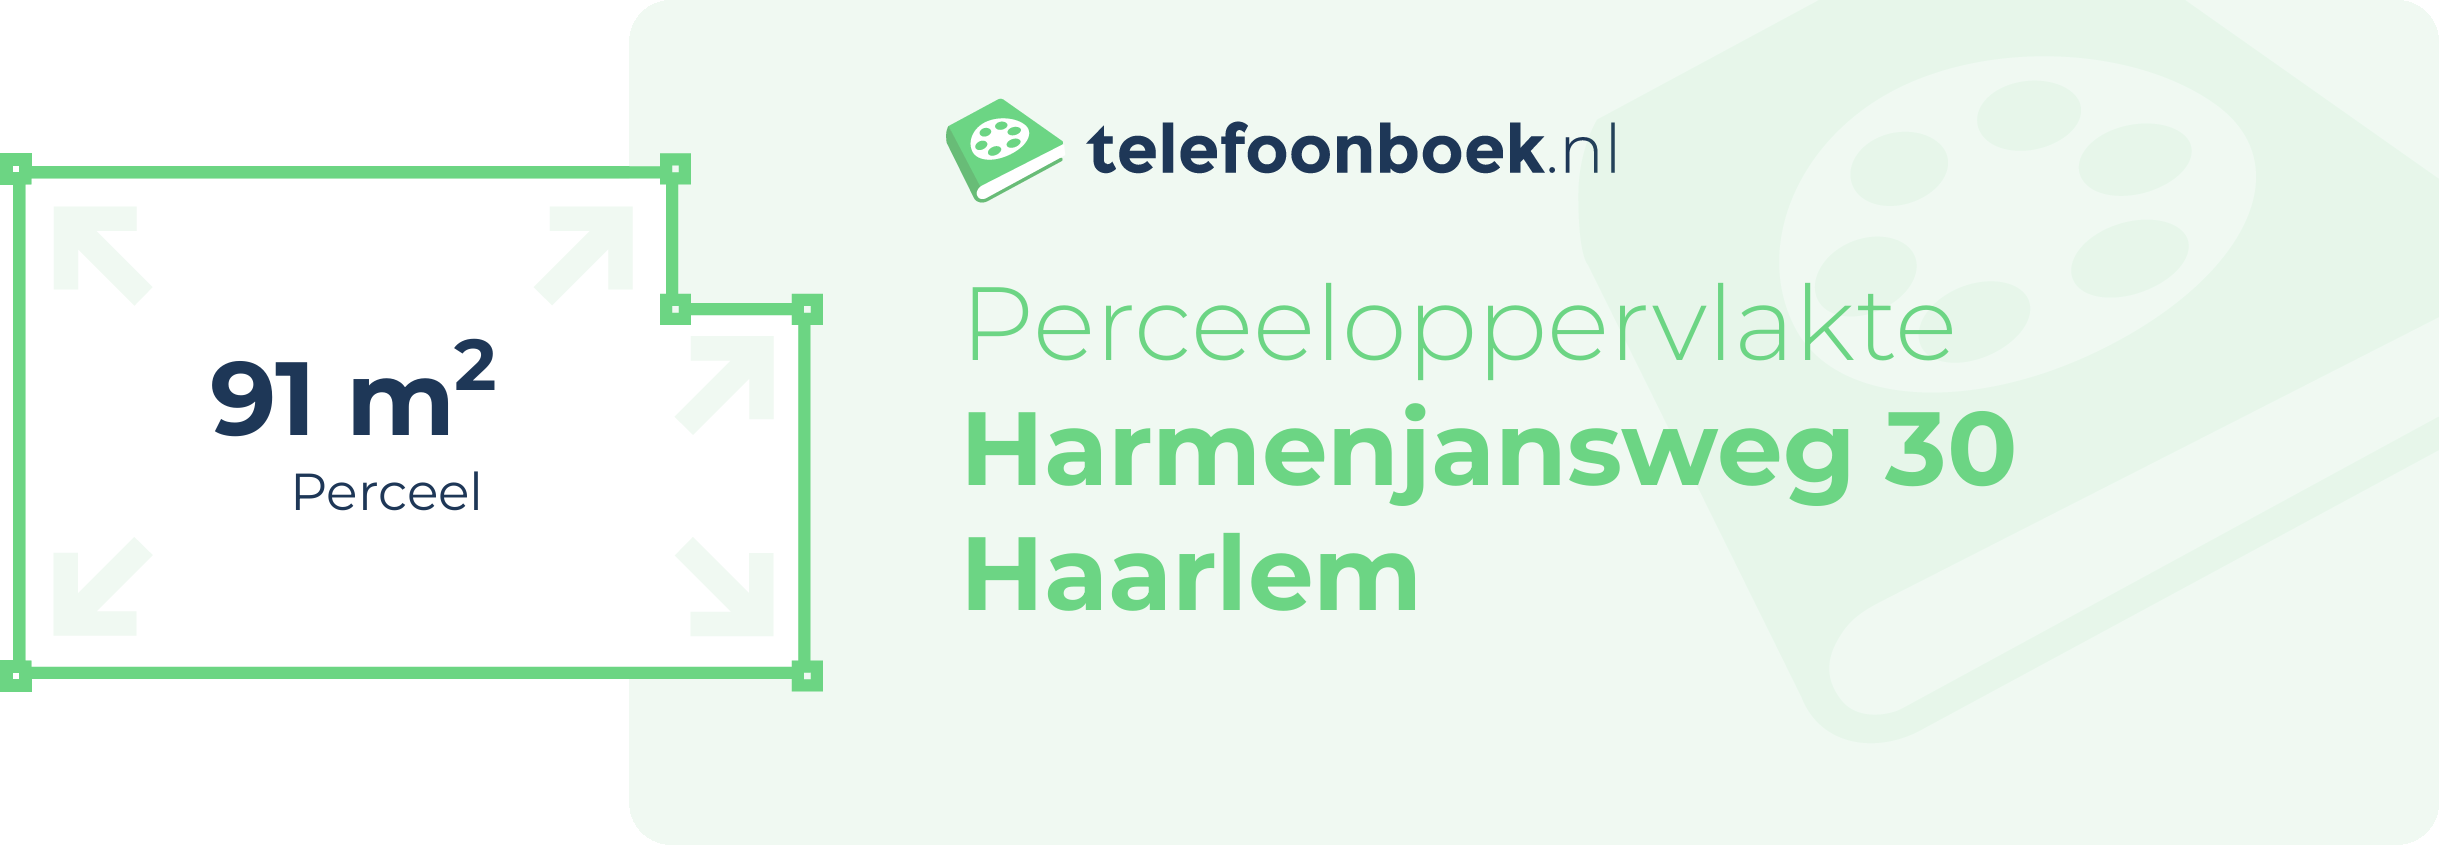 Perceeloppervlakte Harmenjansweg 30 Haarlem